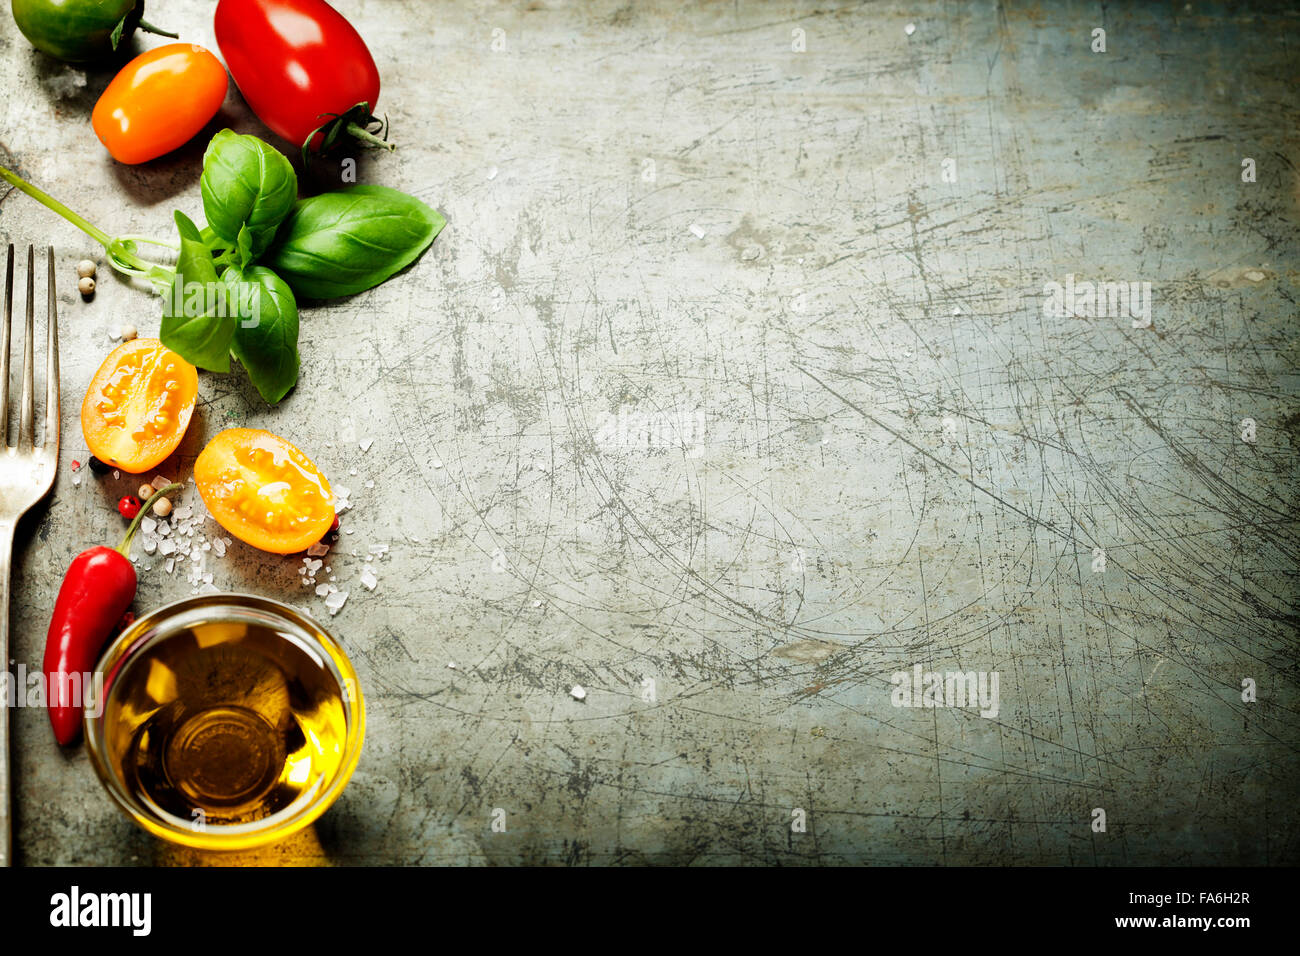 Frisches Bio-Gemüse auf rustikalen Hintergrund (Tomaten, Basilikum, Knoblauch, Olivenöl). Gesunde Ernährung. Vegetarische Kost. Frische harve Stockfoto